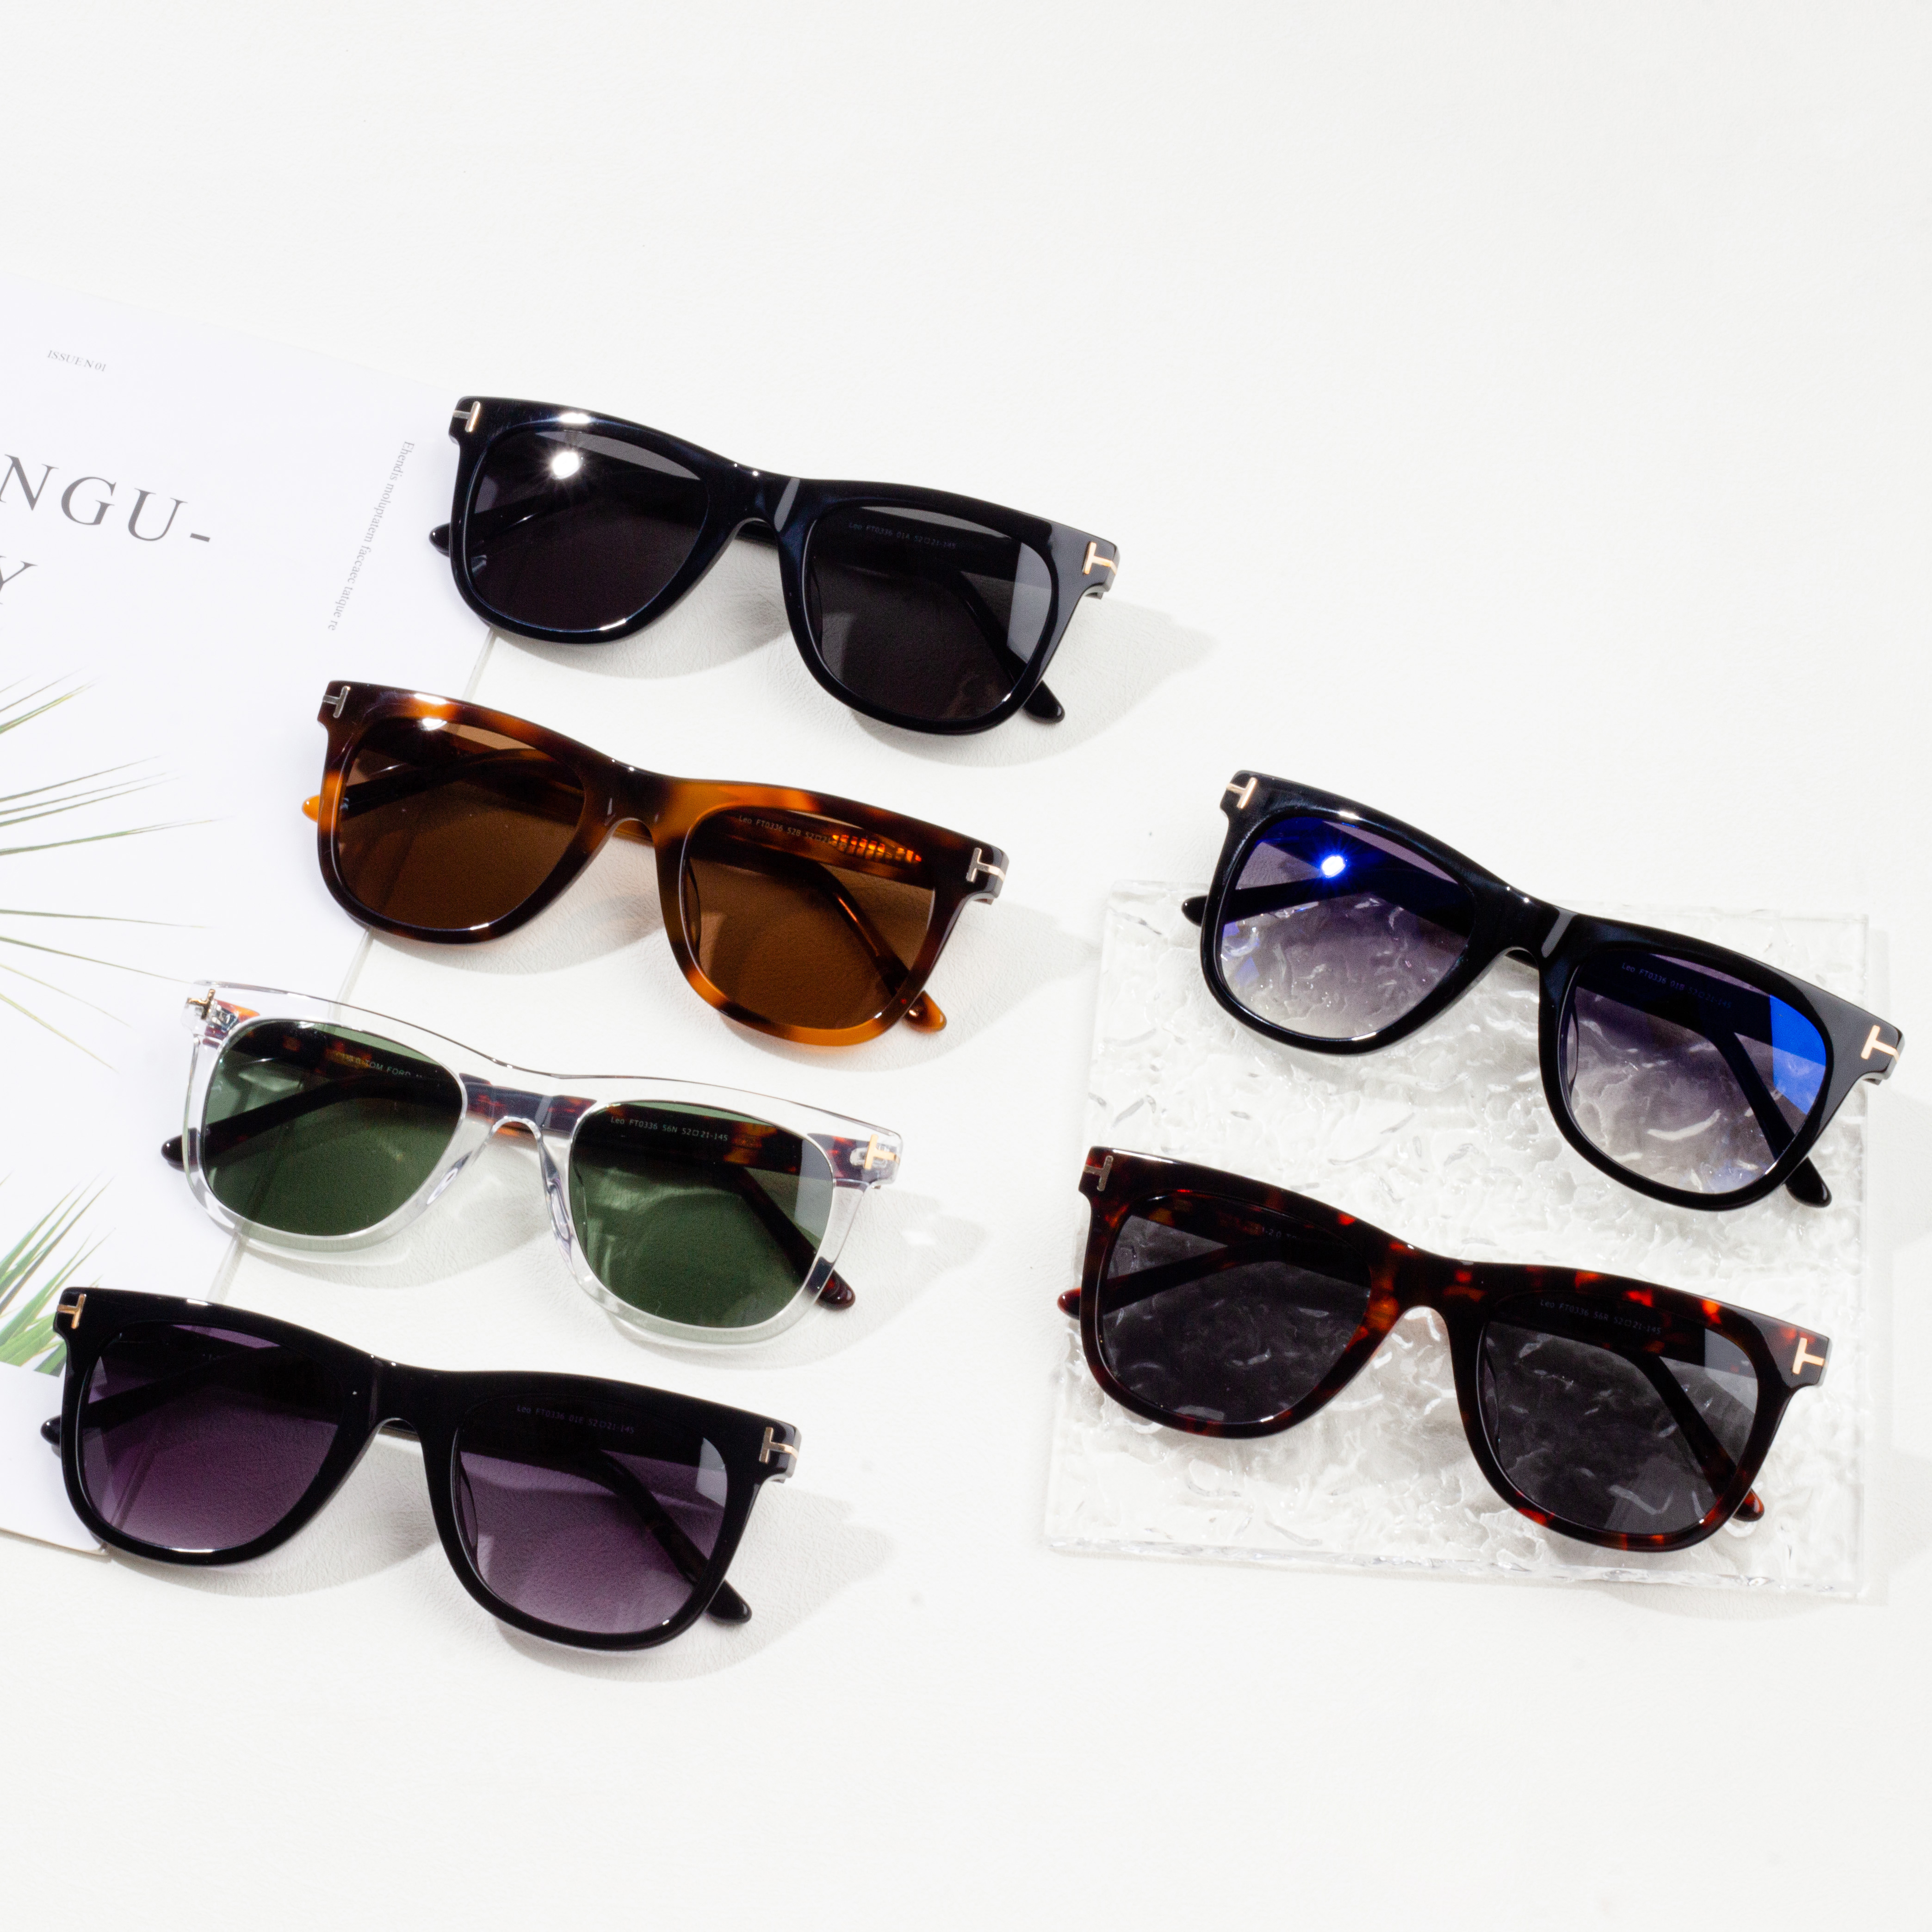 veleprodaja sunčanih naočala online